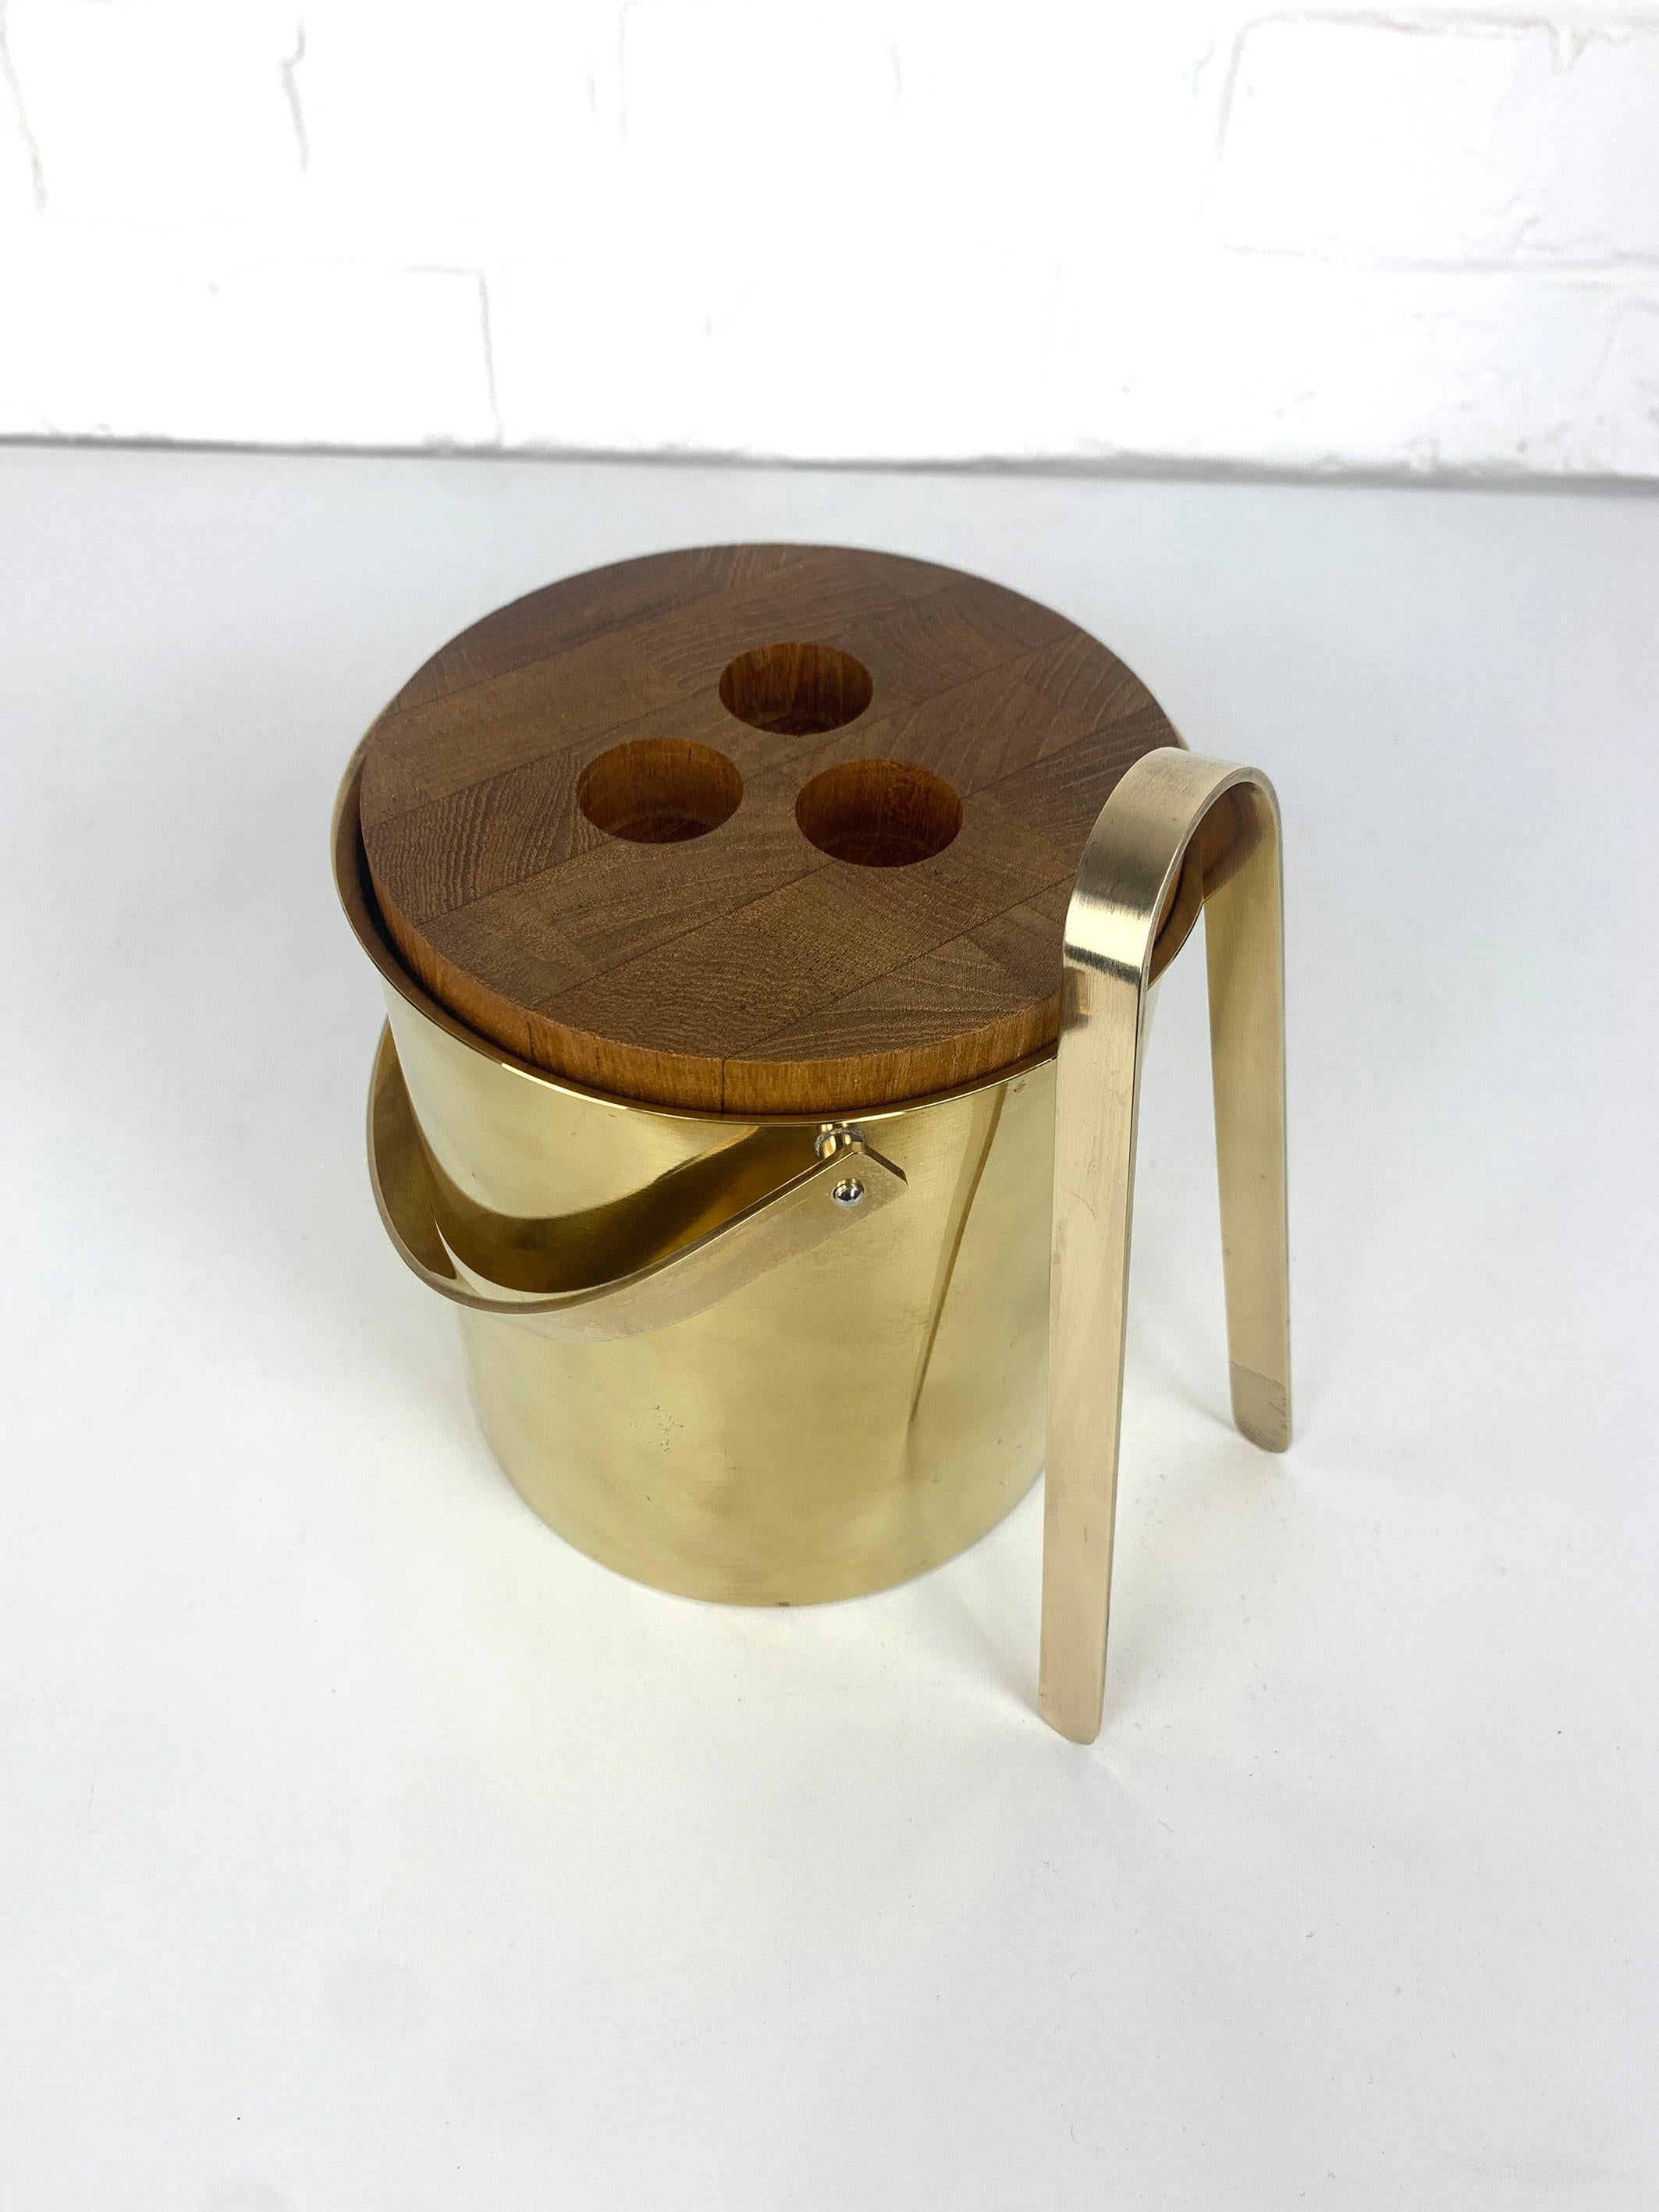 Scandinavian Modern Brass / Teak Ice Bucket & Ice Tong by Arne Jacobsen for Stelton, Brassware 1960s For Sale